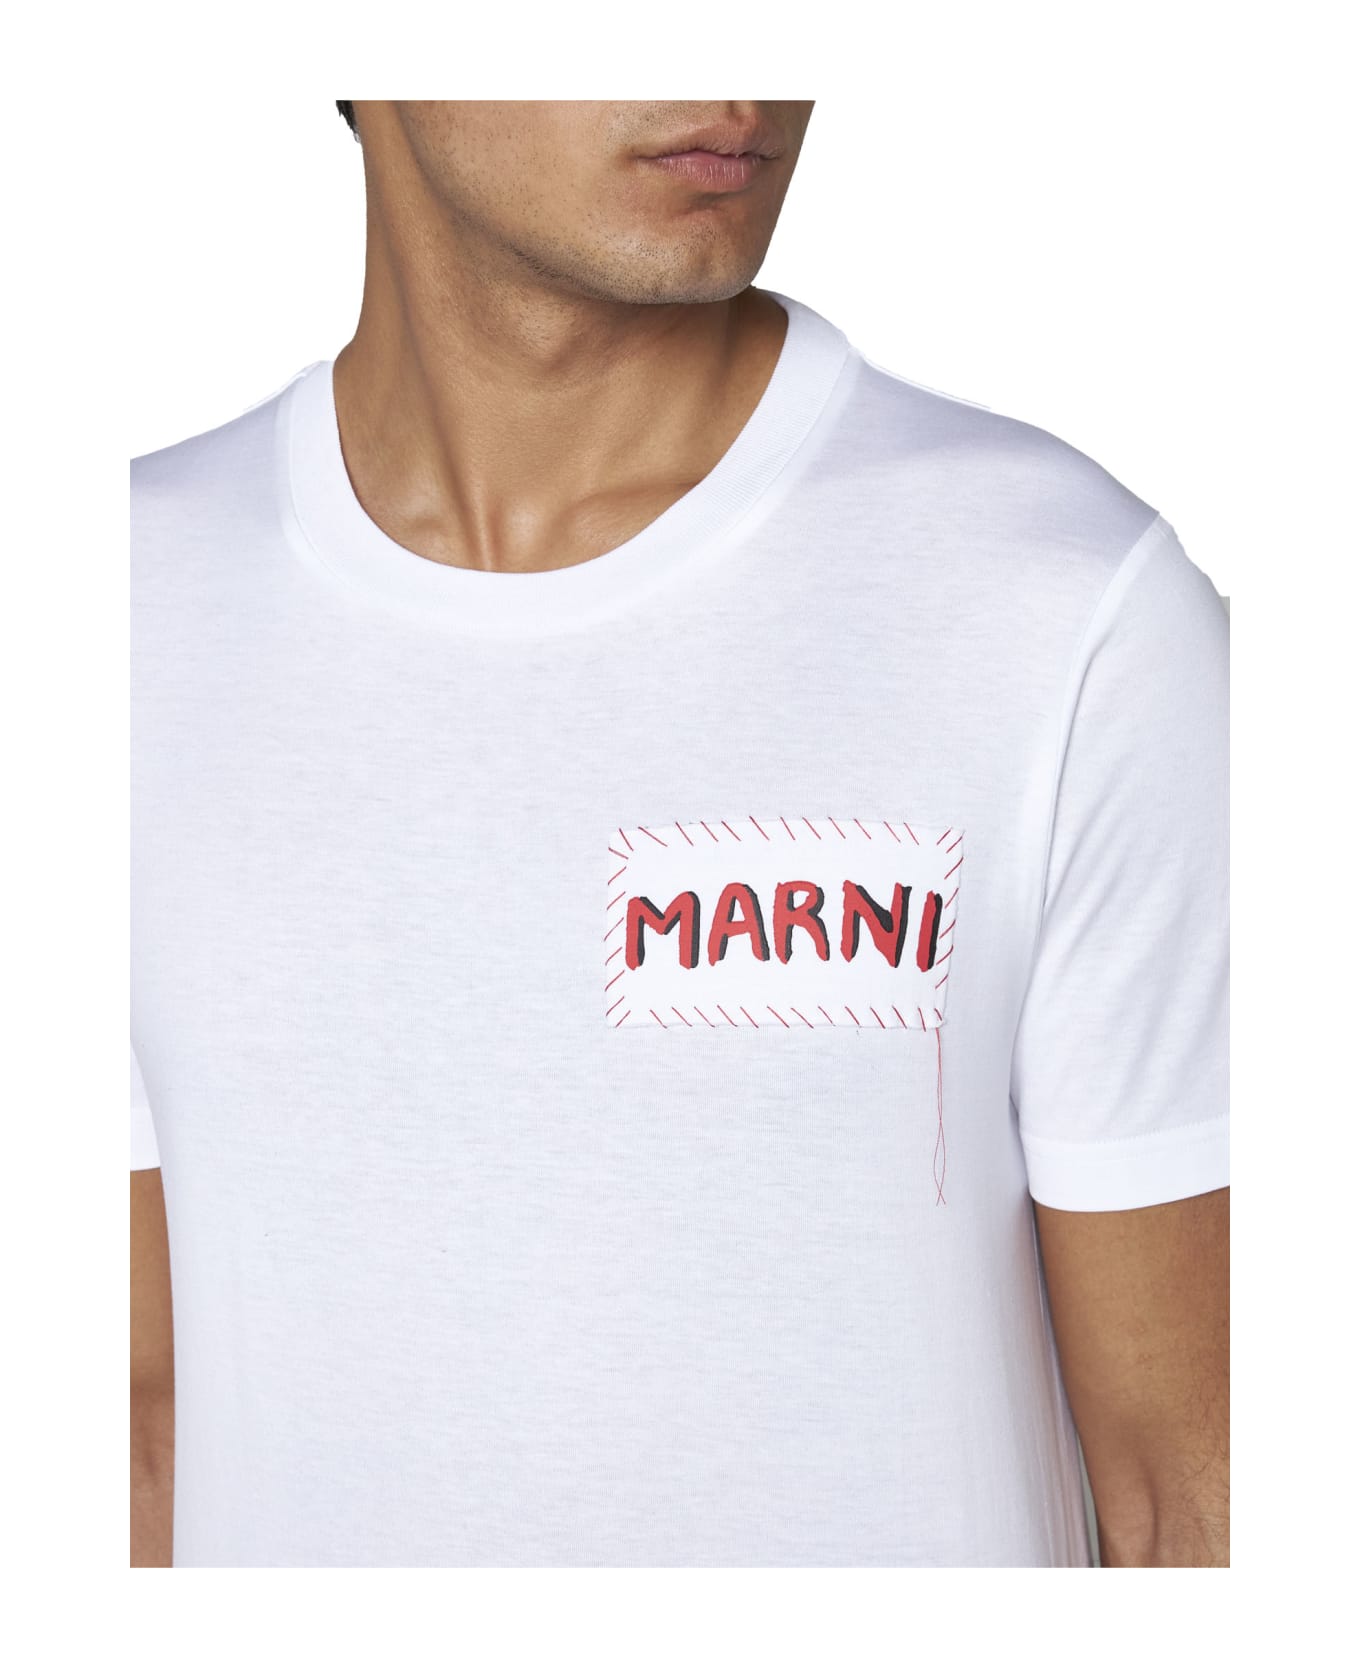 Marni T-Shirt - Bianco